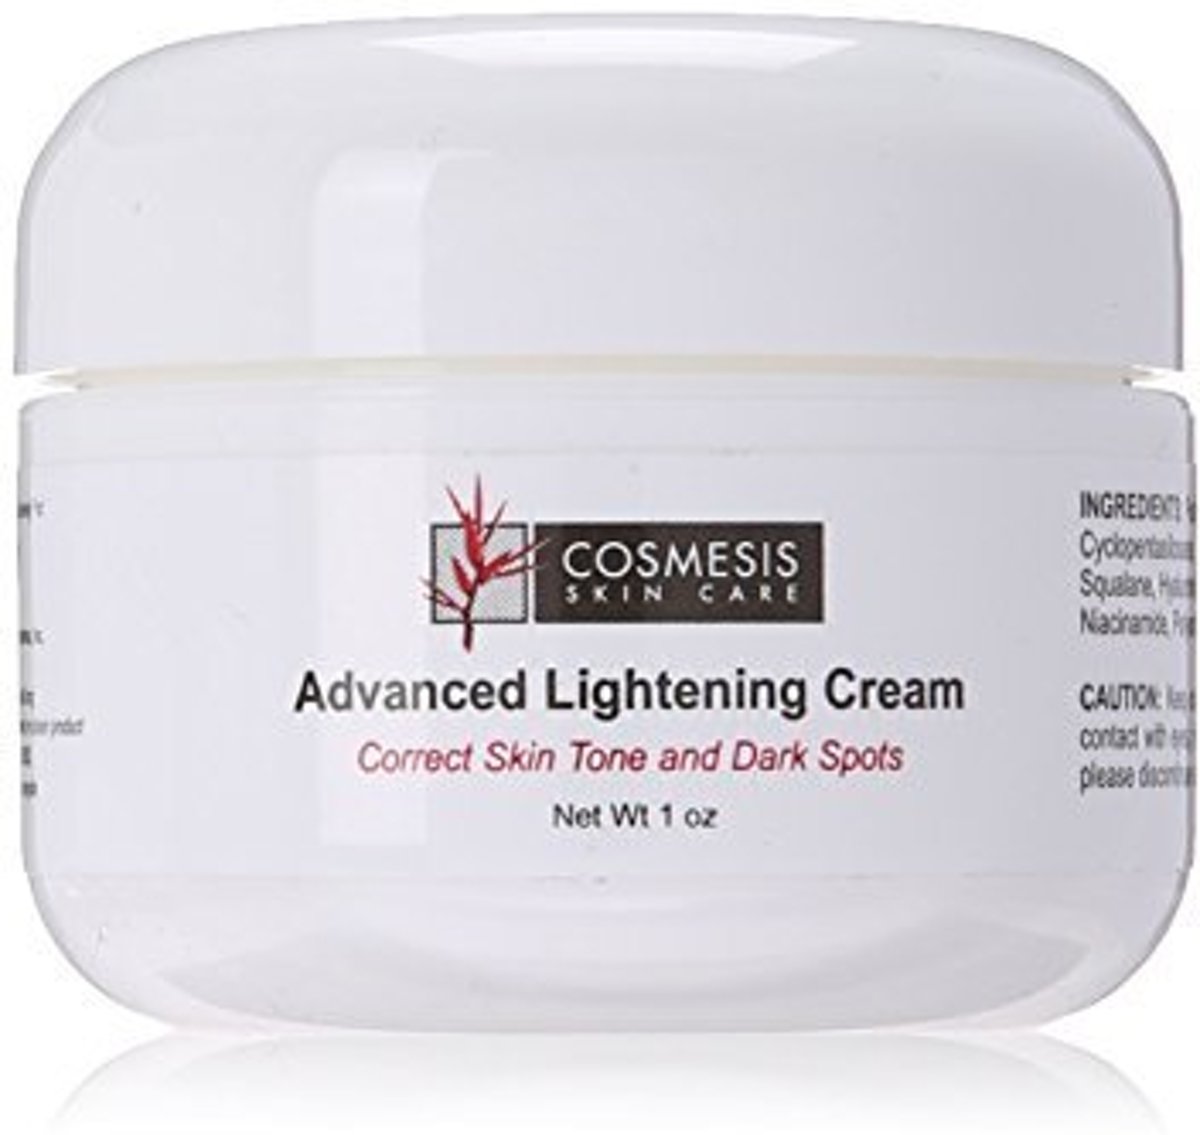 Foto van Advanced Lightening Cream, 1 oz.